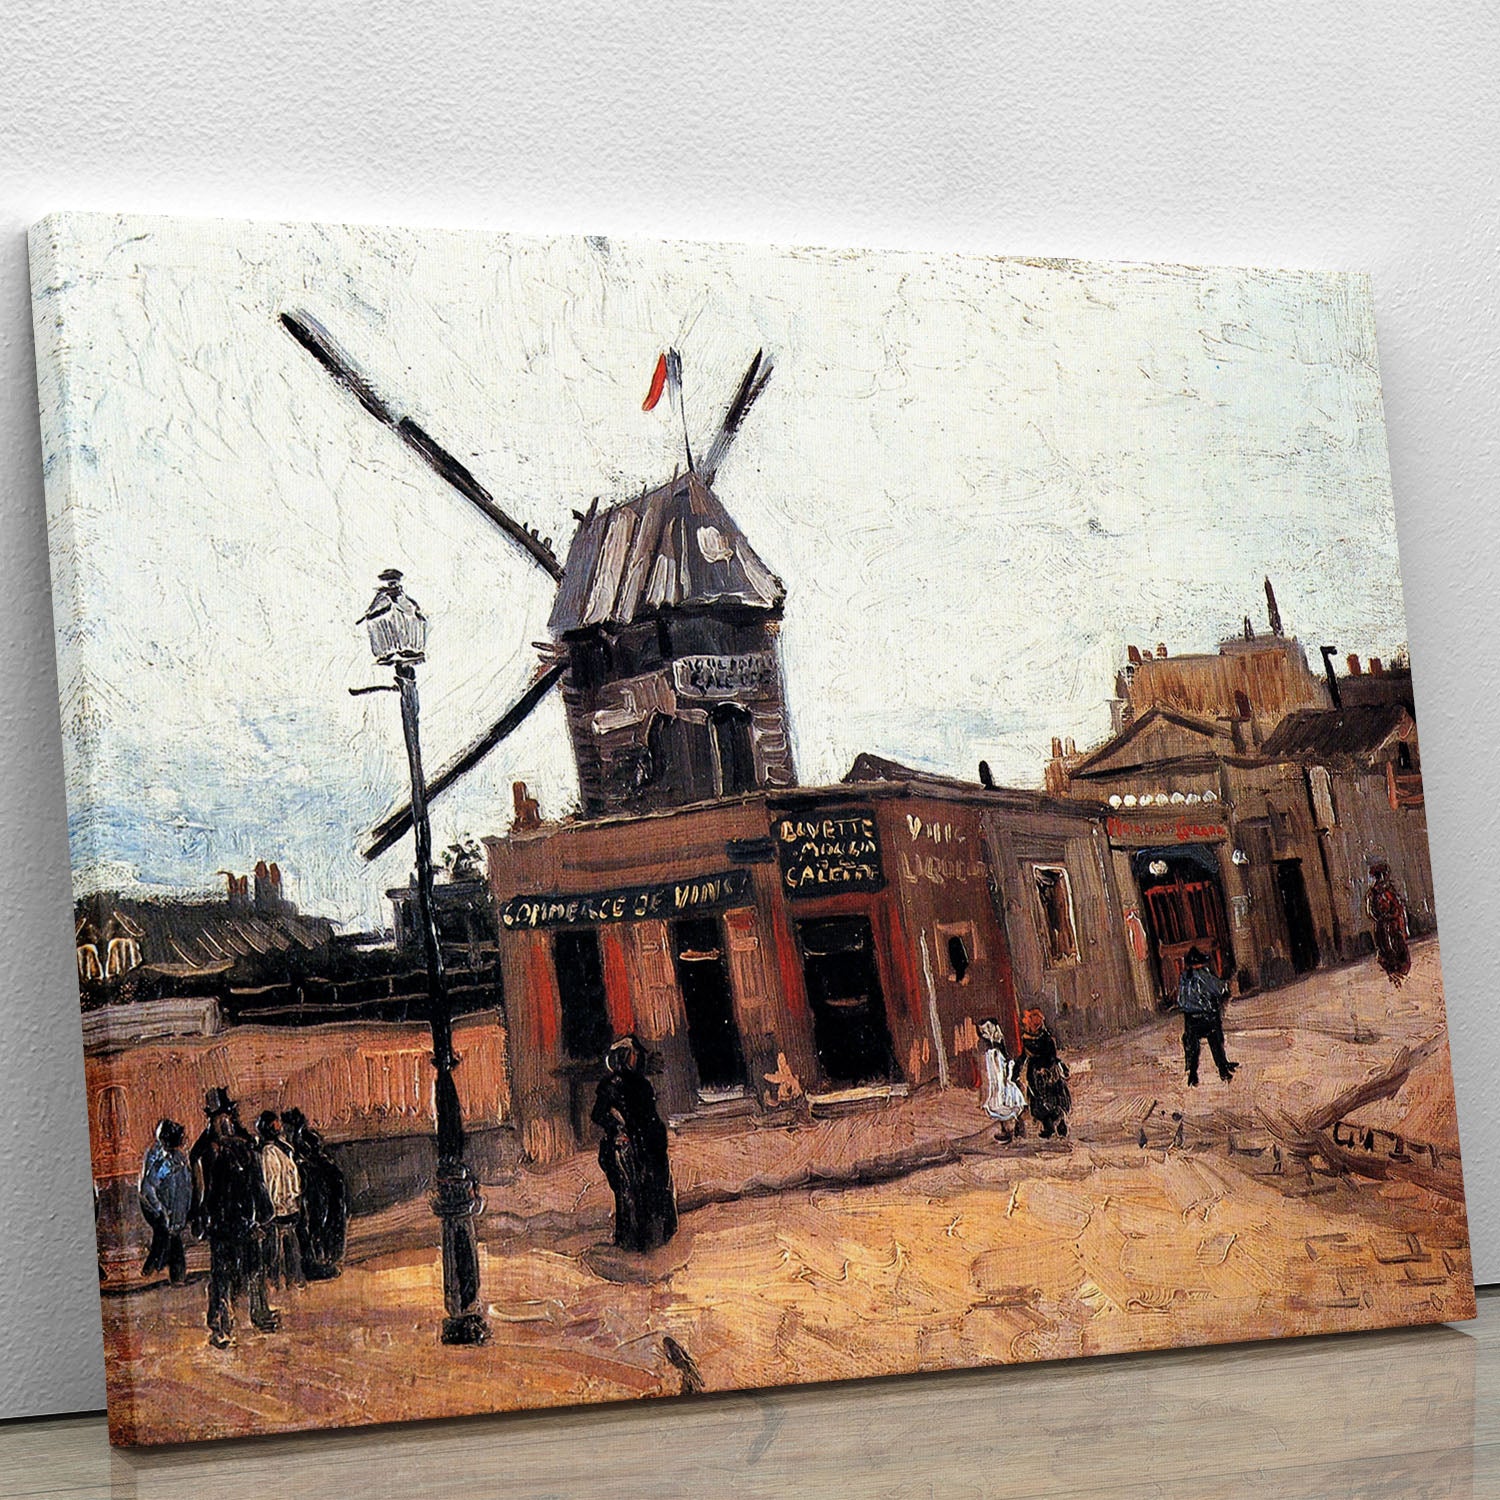 Le Moulin de la Galette 3 by Van Gogh Canvas Print or Poster - Canvas Art Rocks - 1